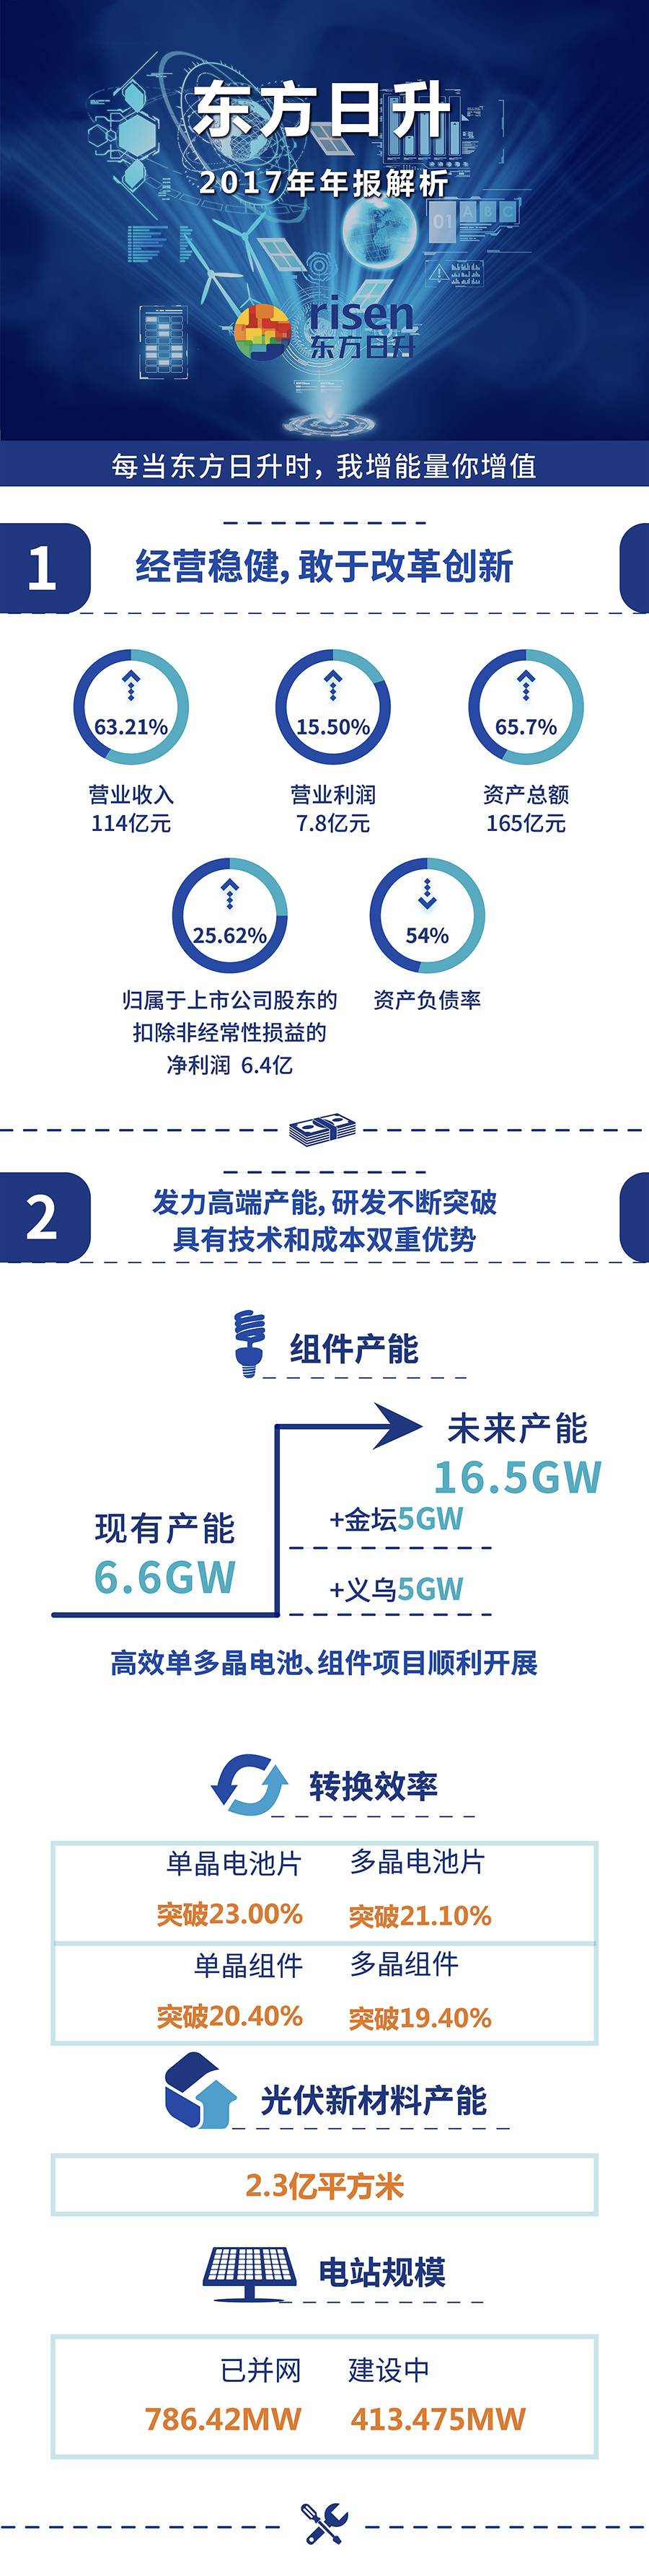 图解财报 | 东方日升2017年年报净利润6.4亿 组件产能6.6GW